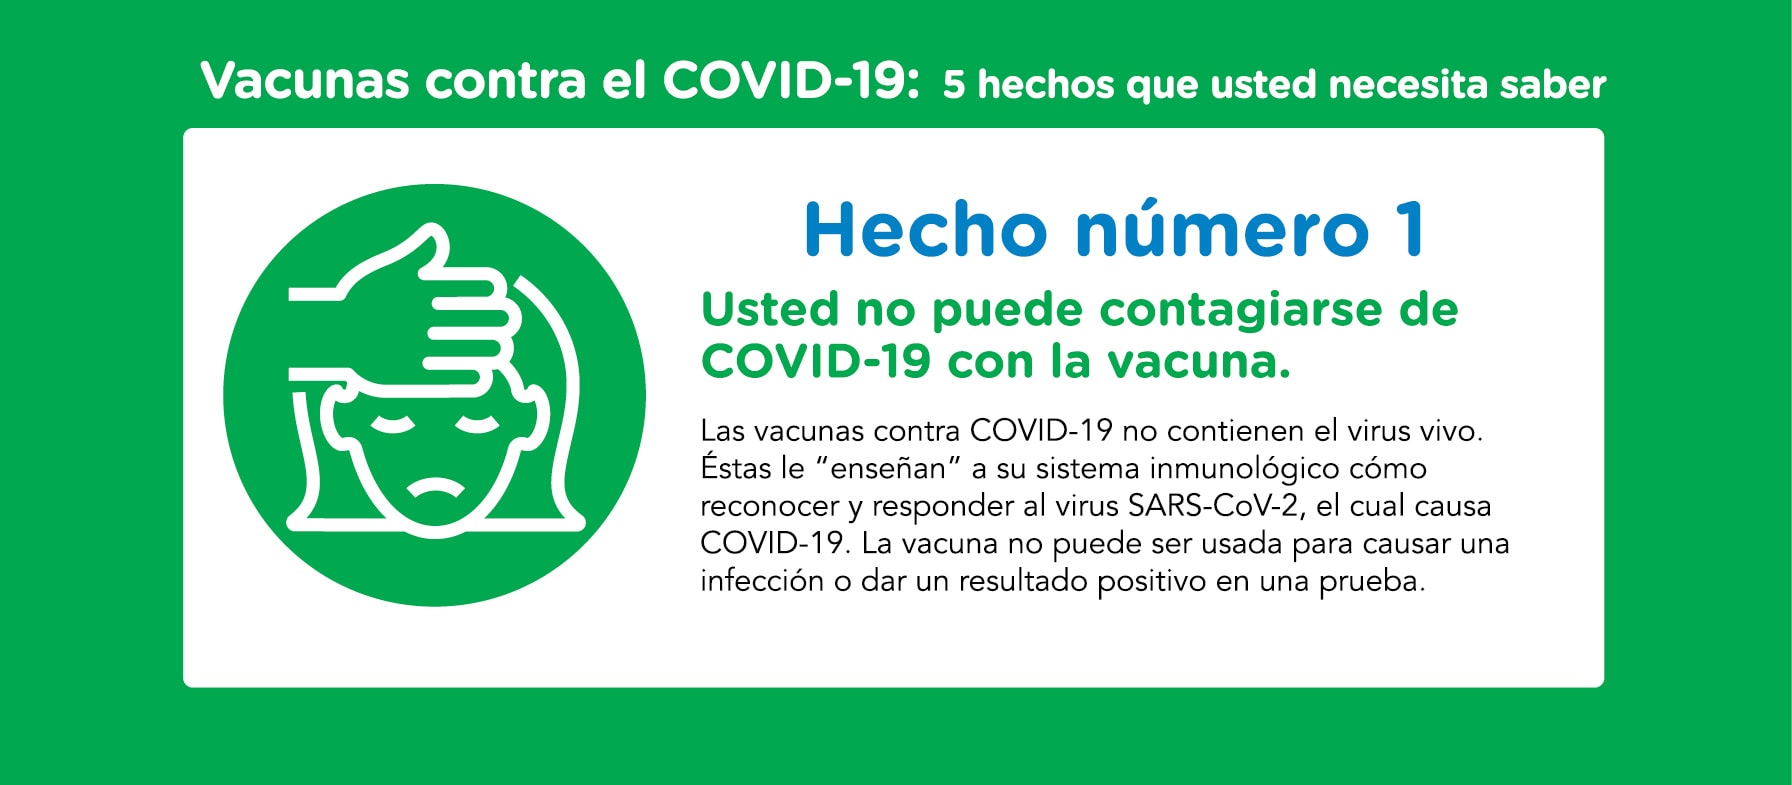 La vacuna contra COVID-19 y el embarazo: Lo que necesita saber